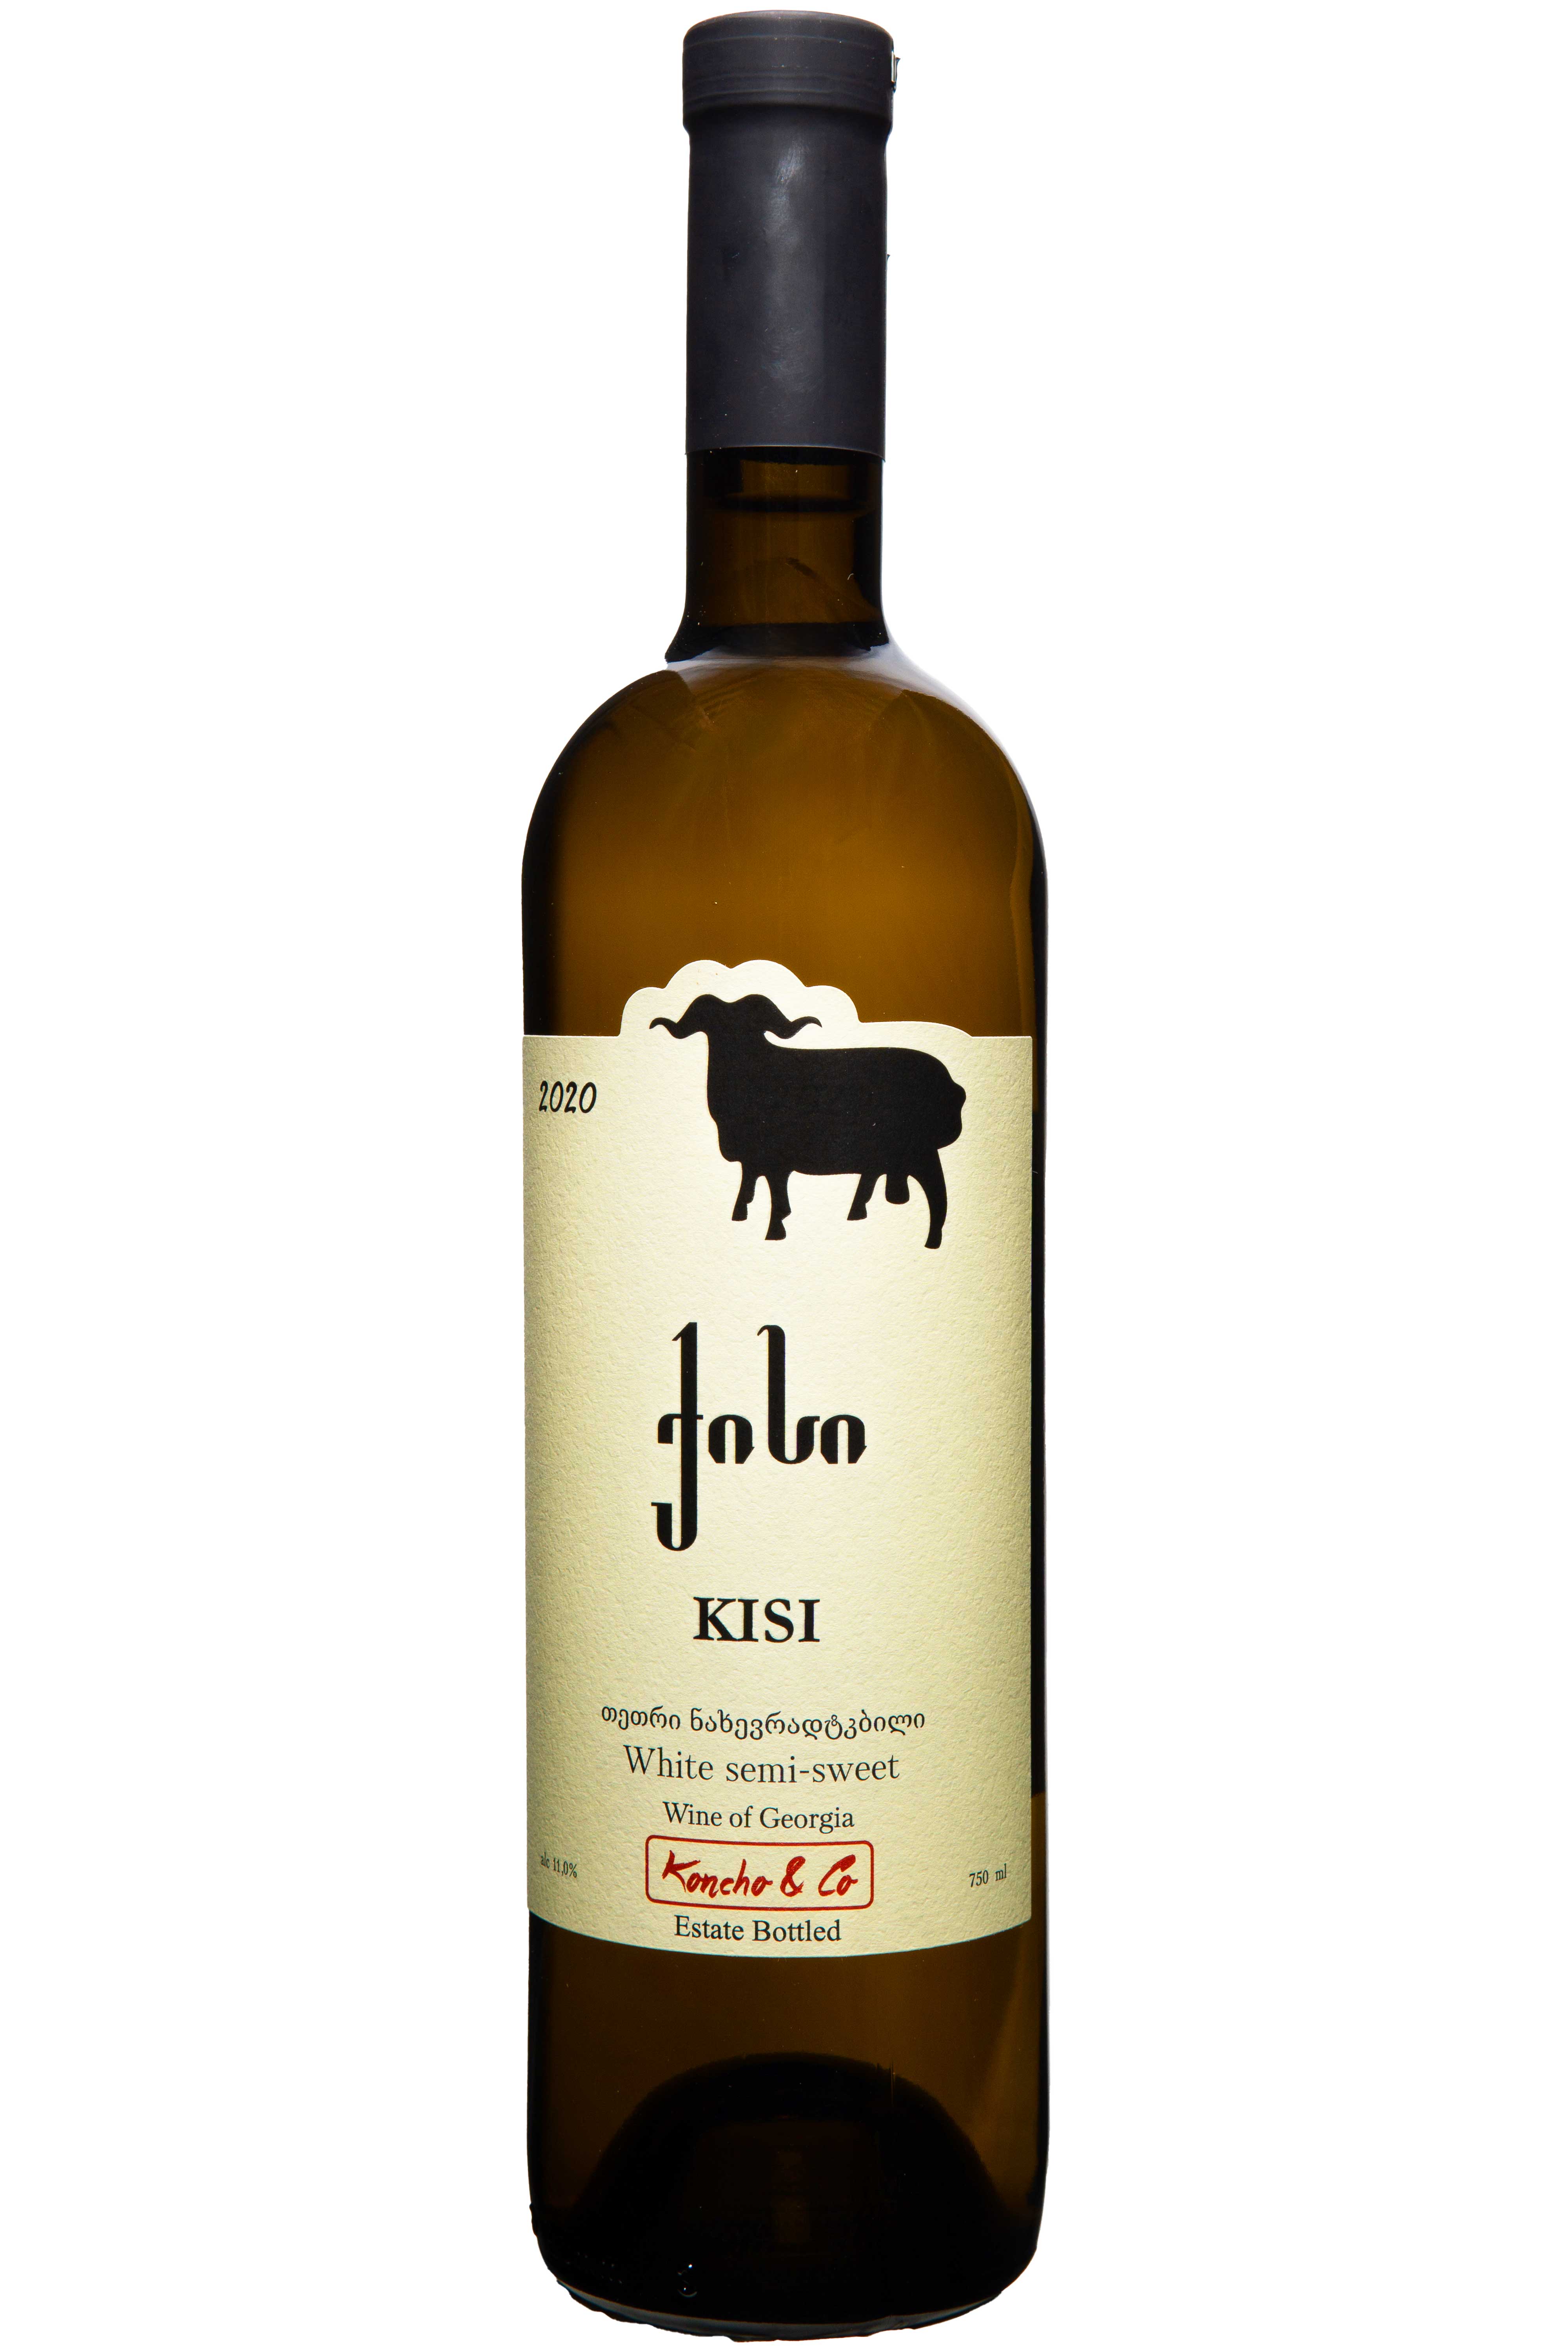 Flasche Koncho & Co. Kisi 2020, lieblicher Weißwein aus Georgien mit reicher Aromenvielfalt und sanfter Süße.